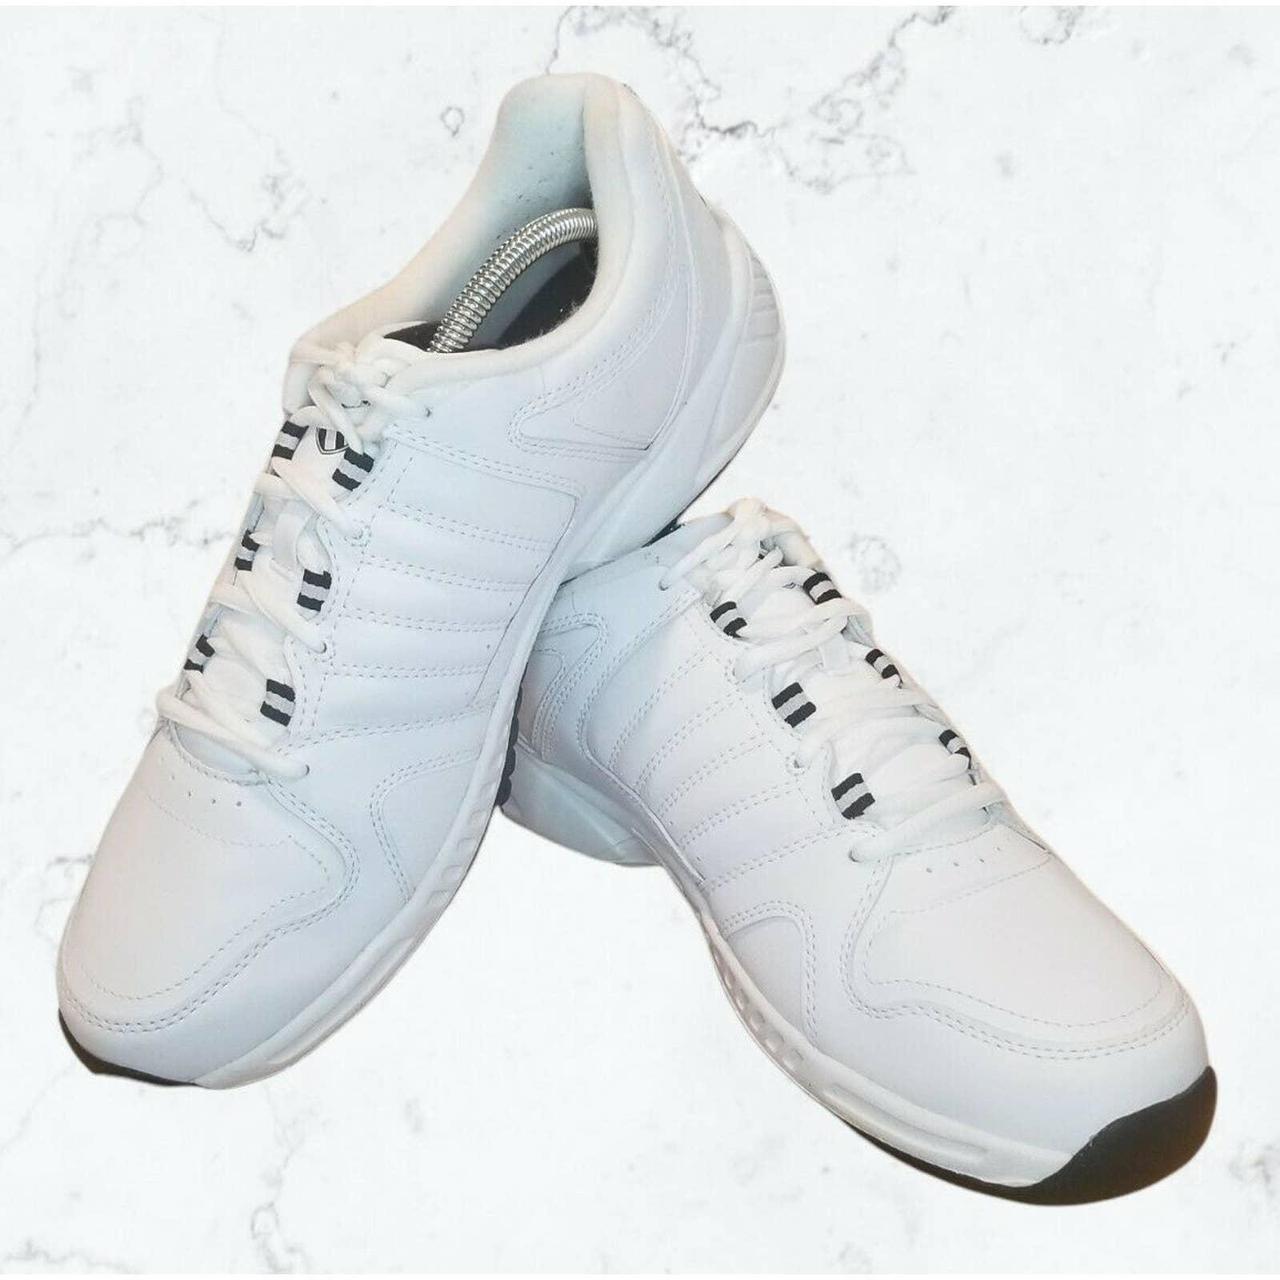 K-Swiss KaySwiss Sneakers white US Men's 11... - Depop